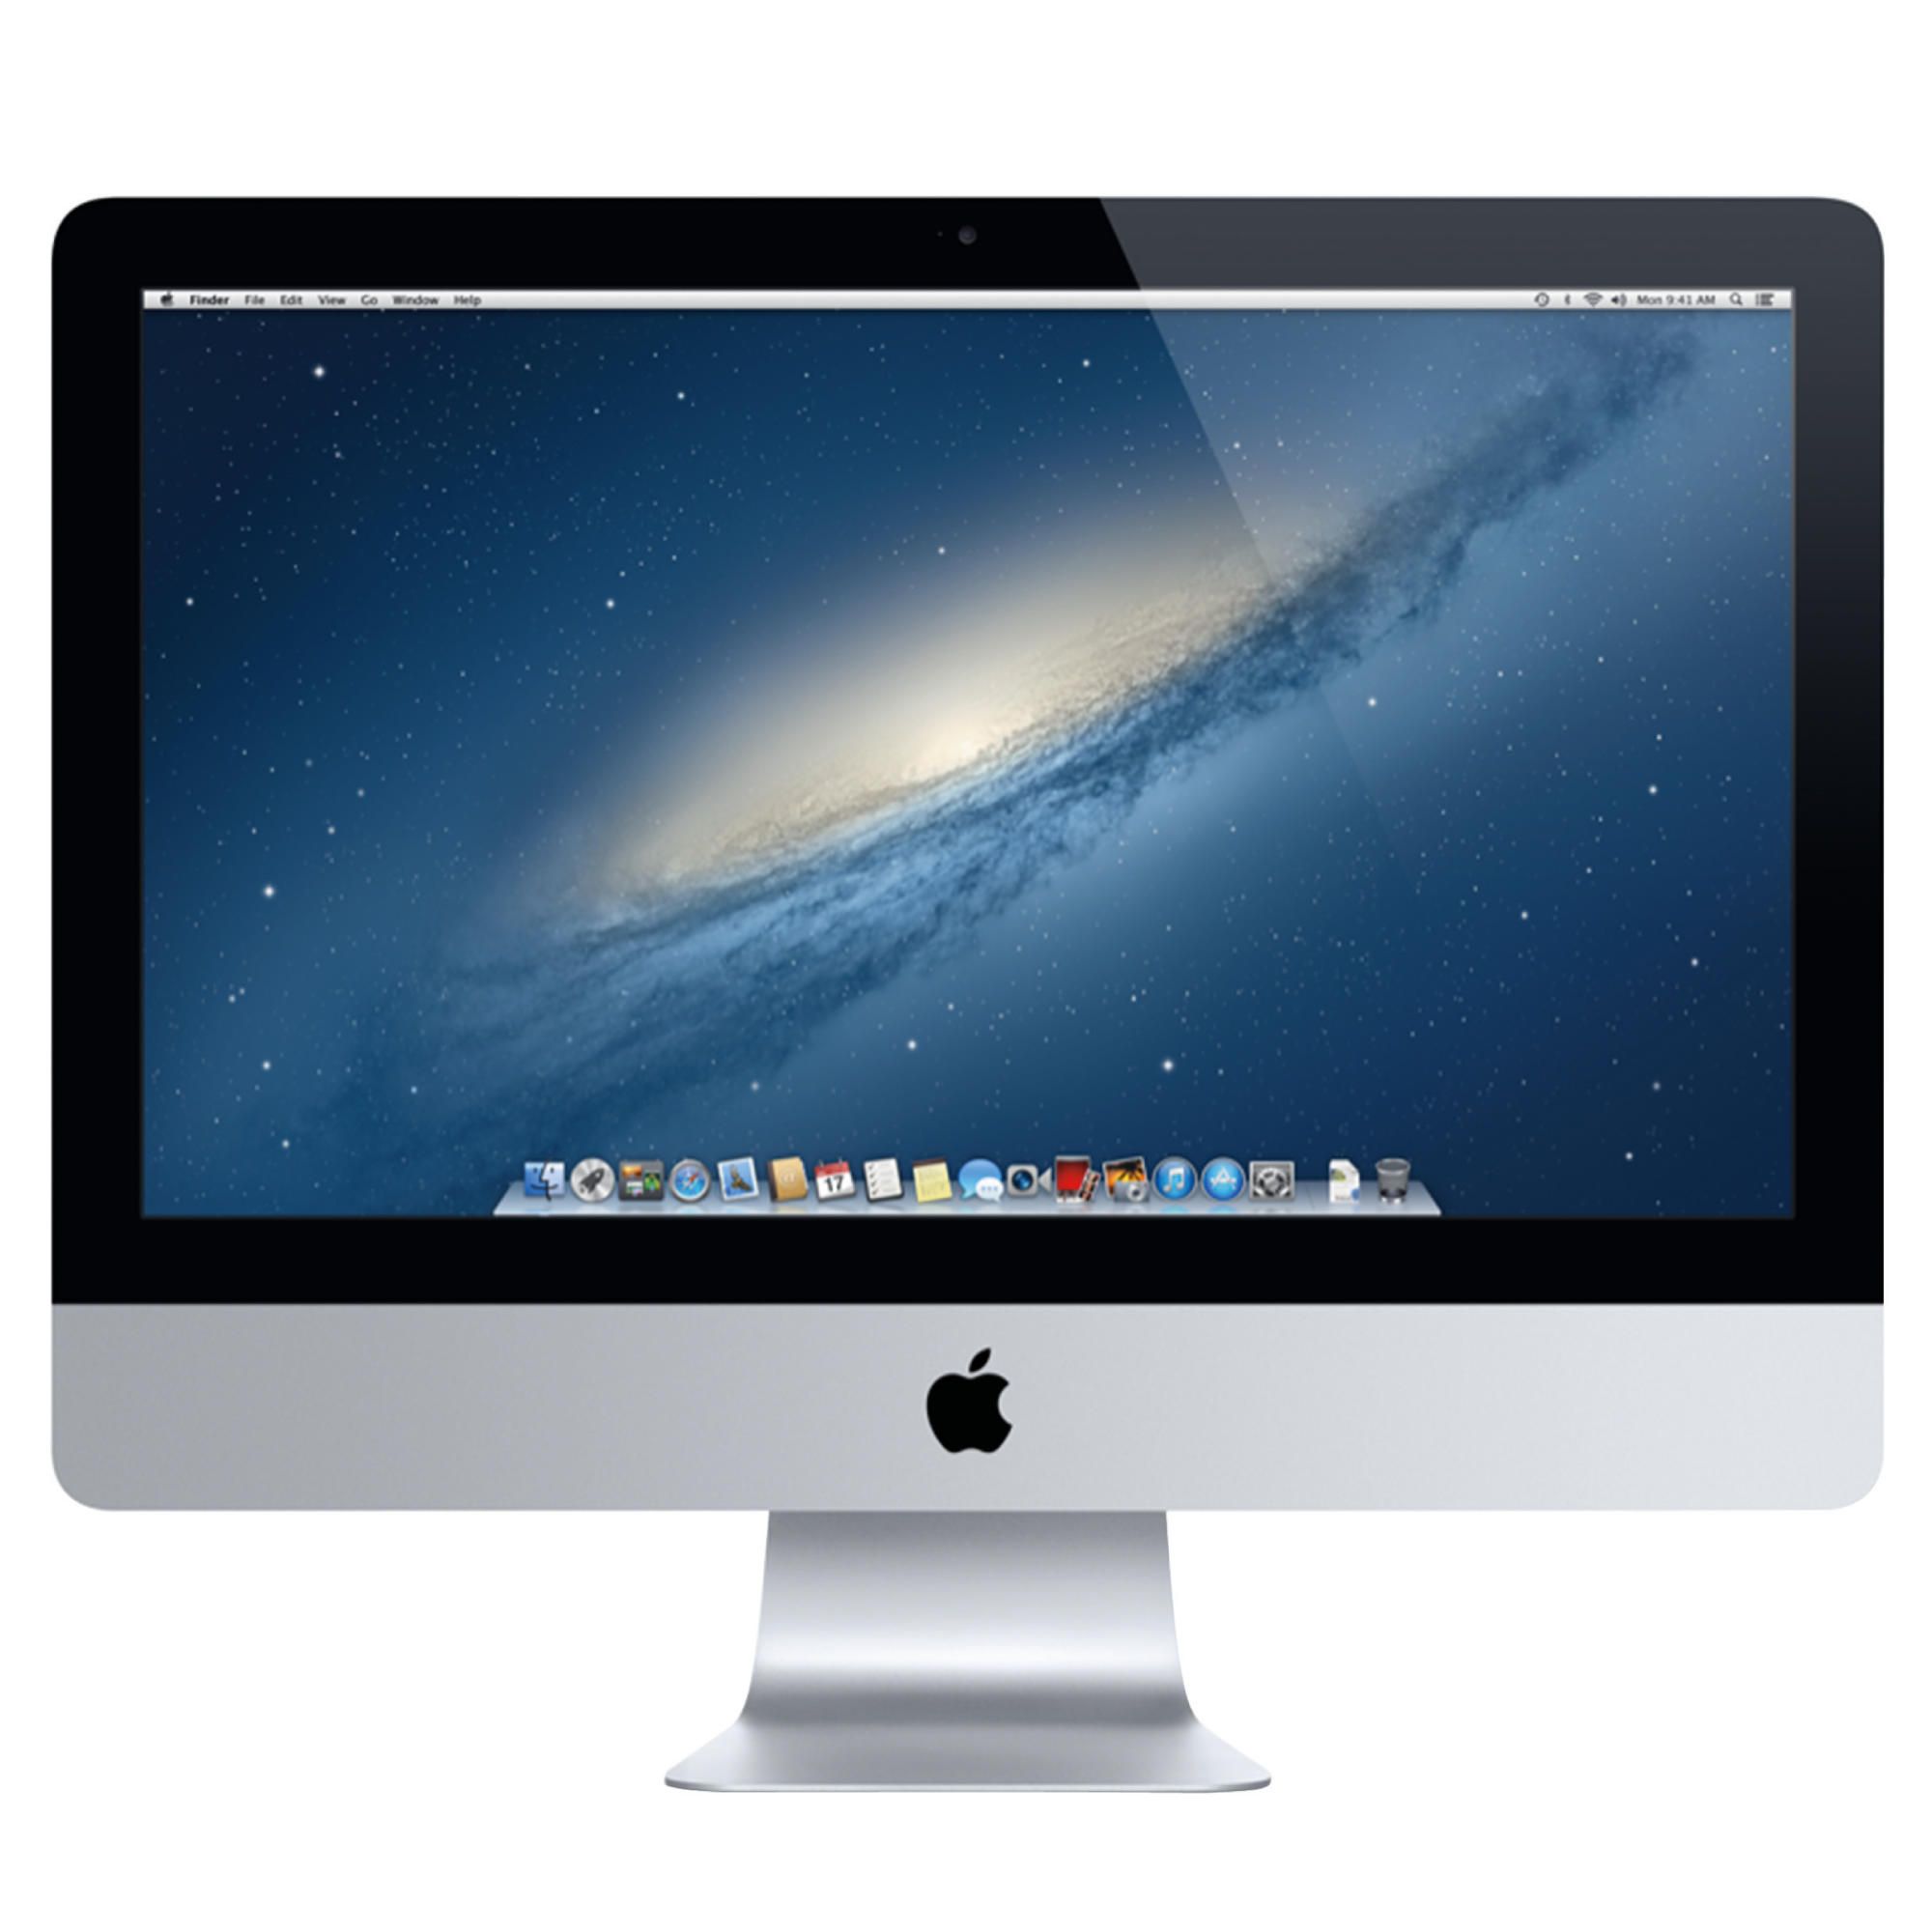 iMac 21.5” ME087B/A quad-core i5 2.9GHz/8GB/1TB/GeForce GT 750M 1GB